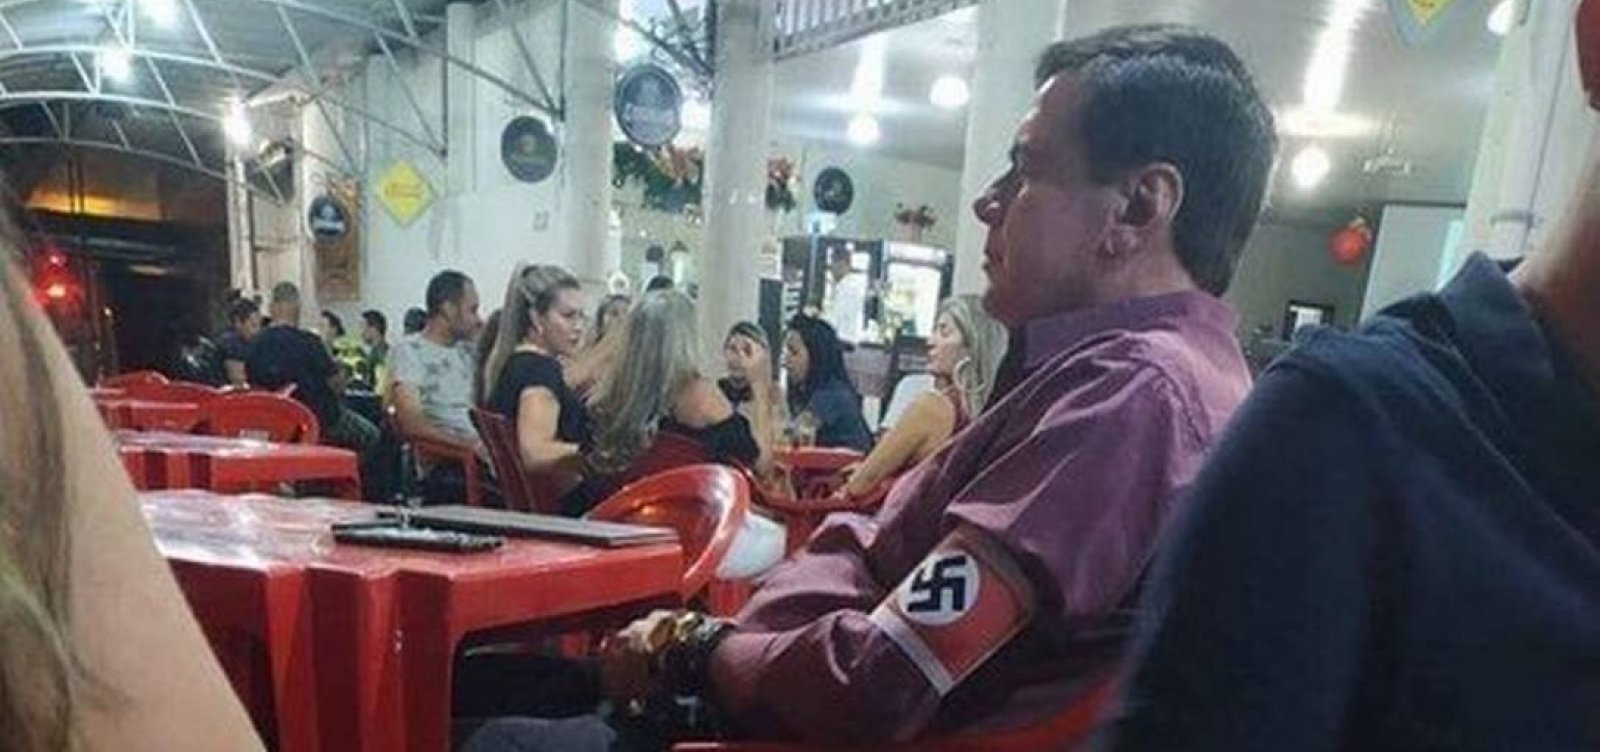 Homem que usou suástica no braço em MG vira réu por apologia ao nazismo